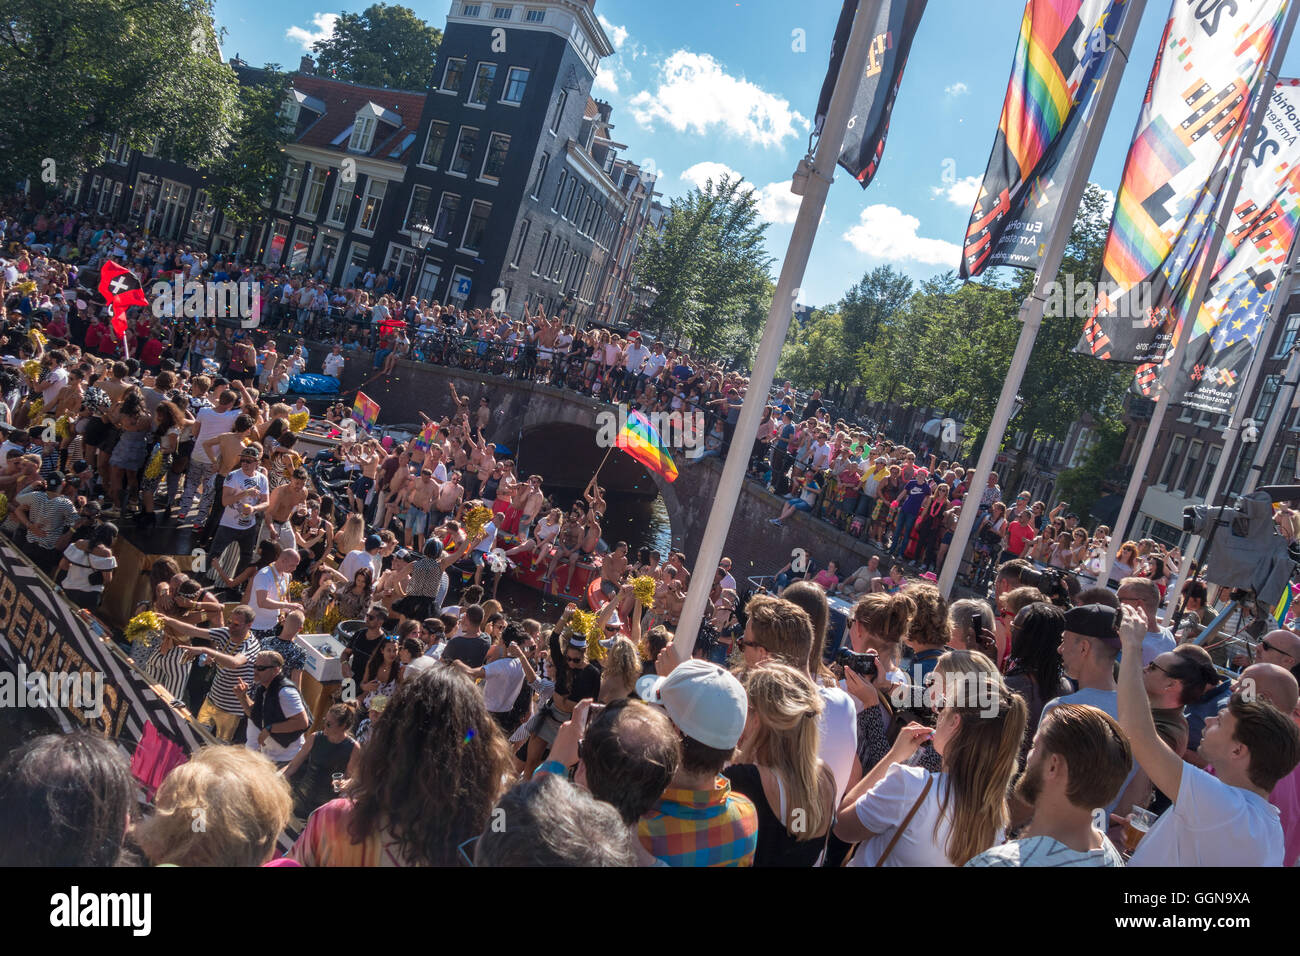 Amsterdam, Pays-Bas. Aug 6th, 2016. Le rapport annuel du Canal Amsterdam Gay Pride Parade était une édition spéciale parce qu'Amsterdam accueille l'EuroPride cette année. Des foules immenses acclamé 80 bateaux le long du canal Prinsengracht et la rivière Amstel. Credit : Wiskerke/Alamy Live News Banque D'Images